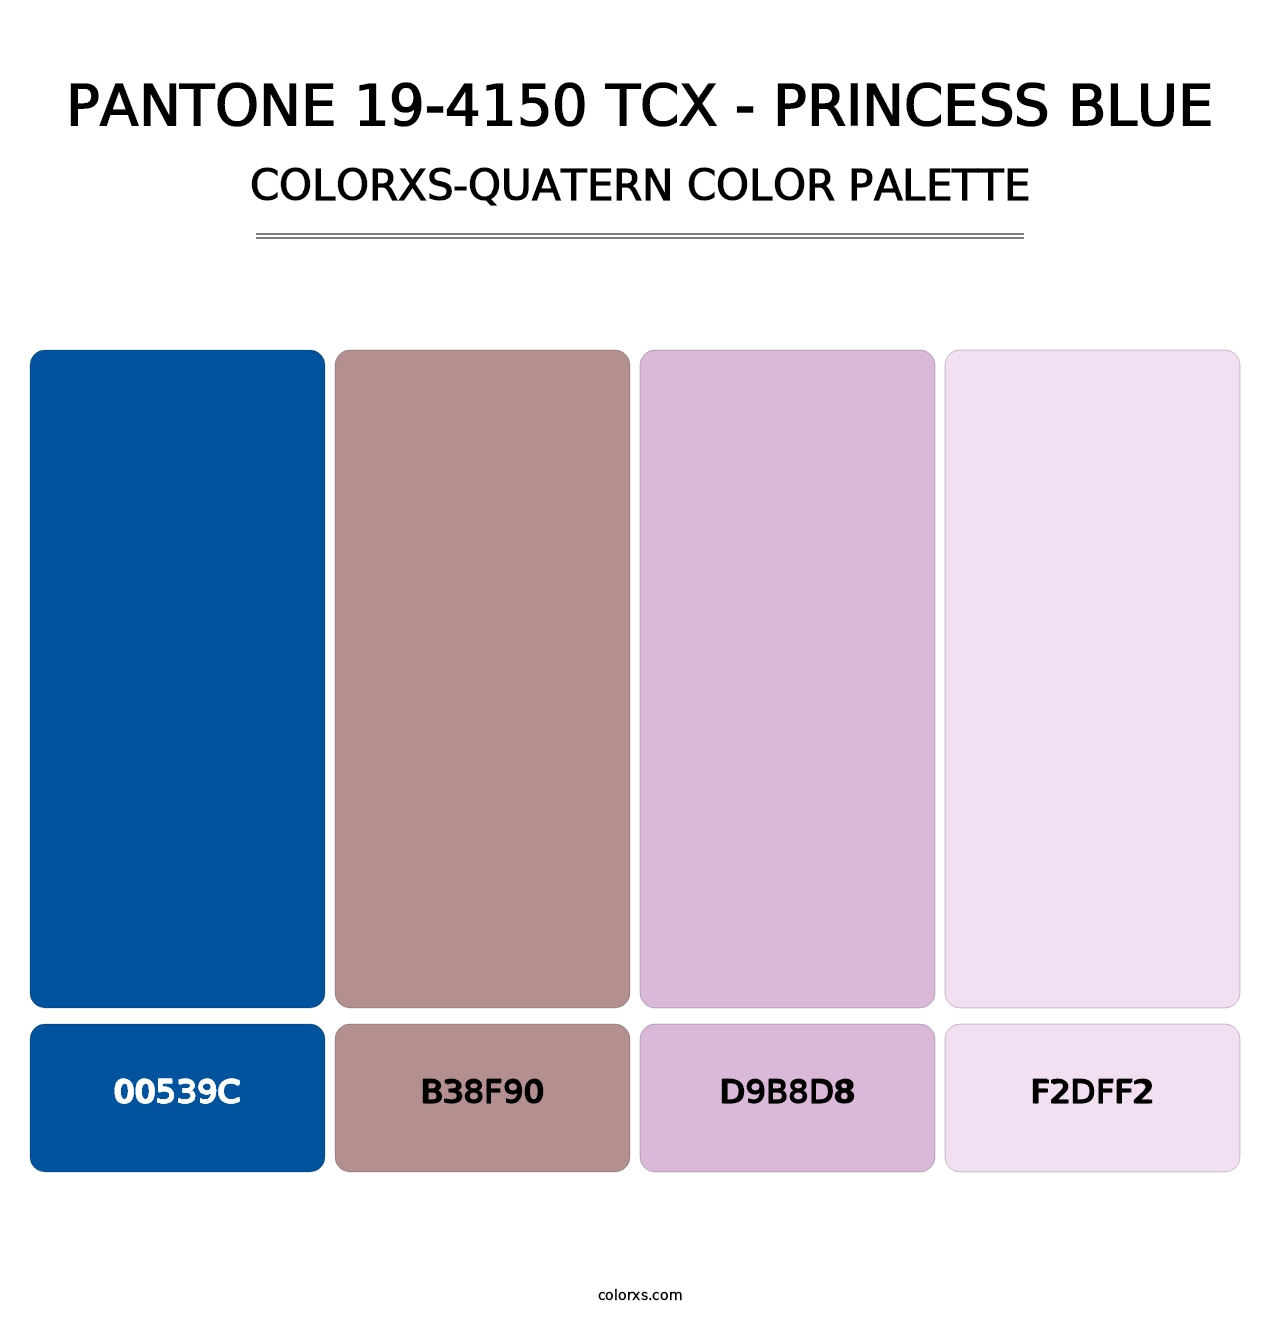 PANTONE 19-4150 TCX - Princess Blue - Colorxs Quatern Palette